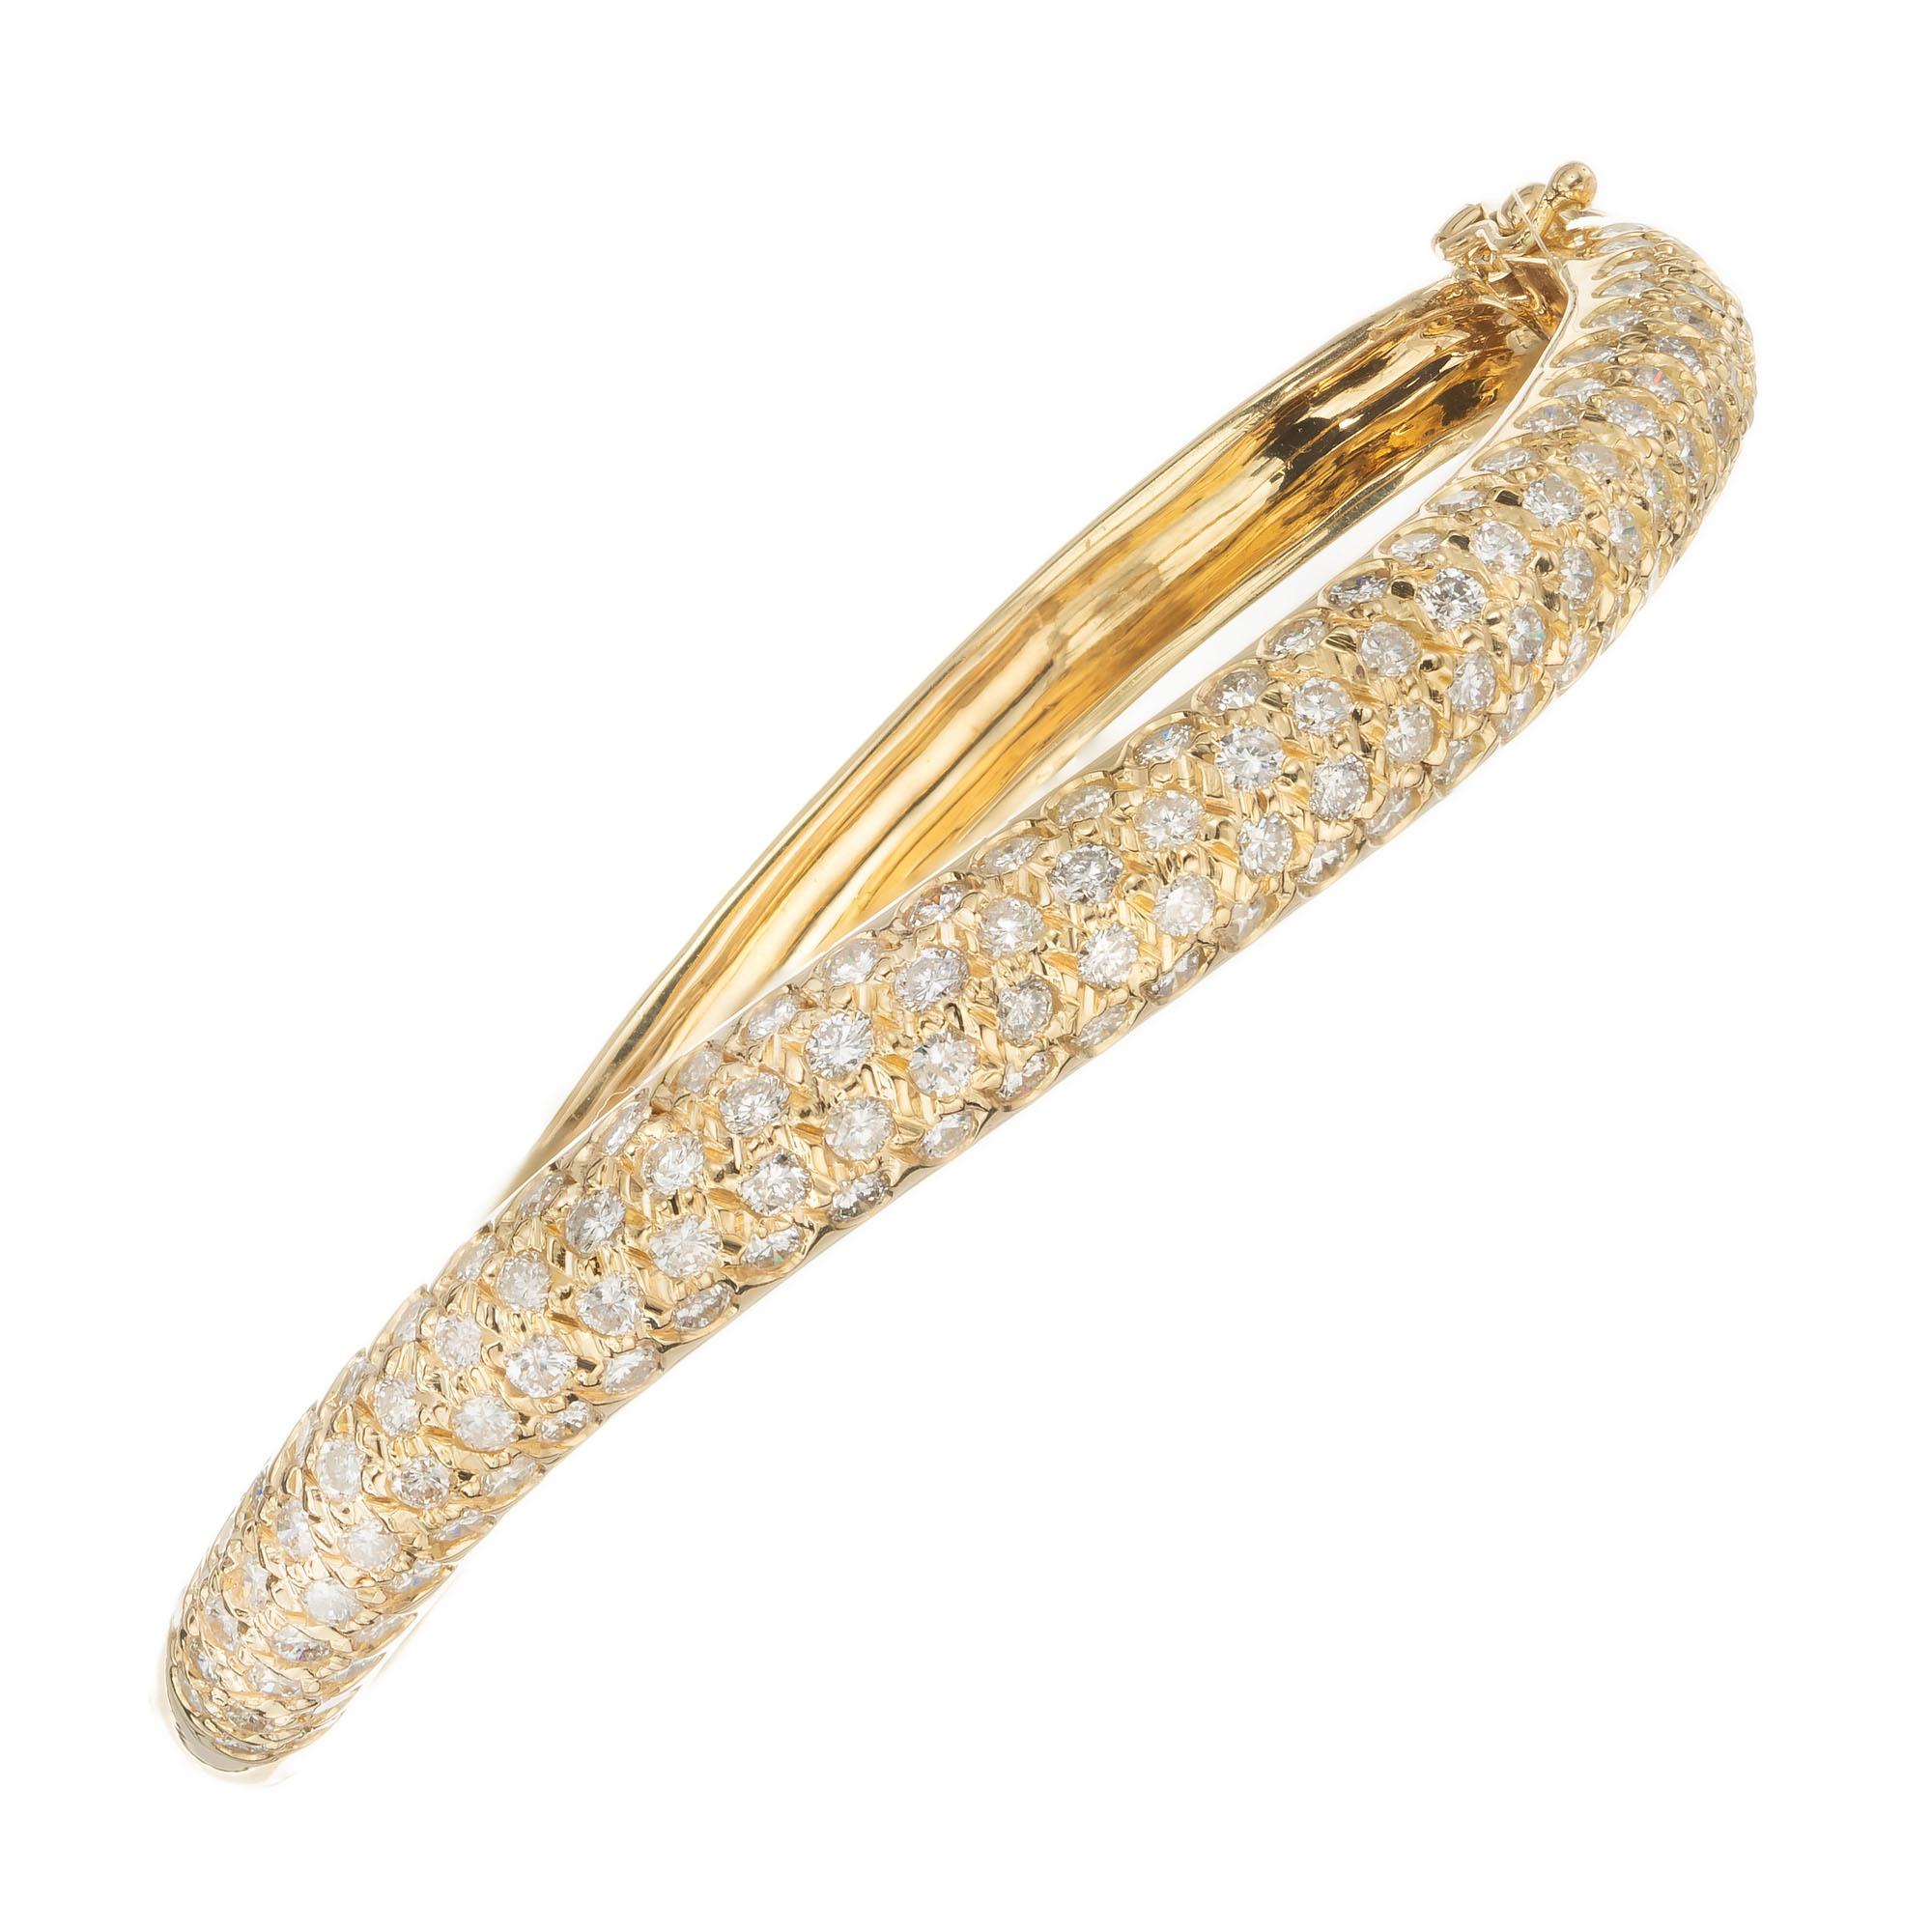 2.bracelet bangle en diamants pavés de 00 carat. bracelet bangle en or jaune 18 carats avec fermoir intégré et deux fermetures de sécurité latérales. longueur de 7 à 7,5 cm.

128 diamants ronds de taille brillant, H-I SI environ 2.00cts
7-7.5 pouces